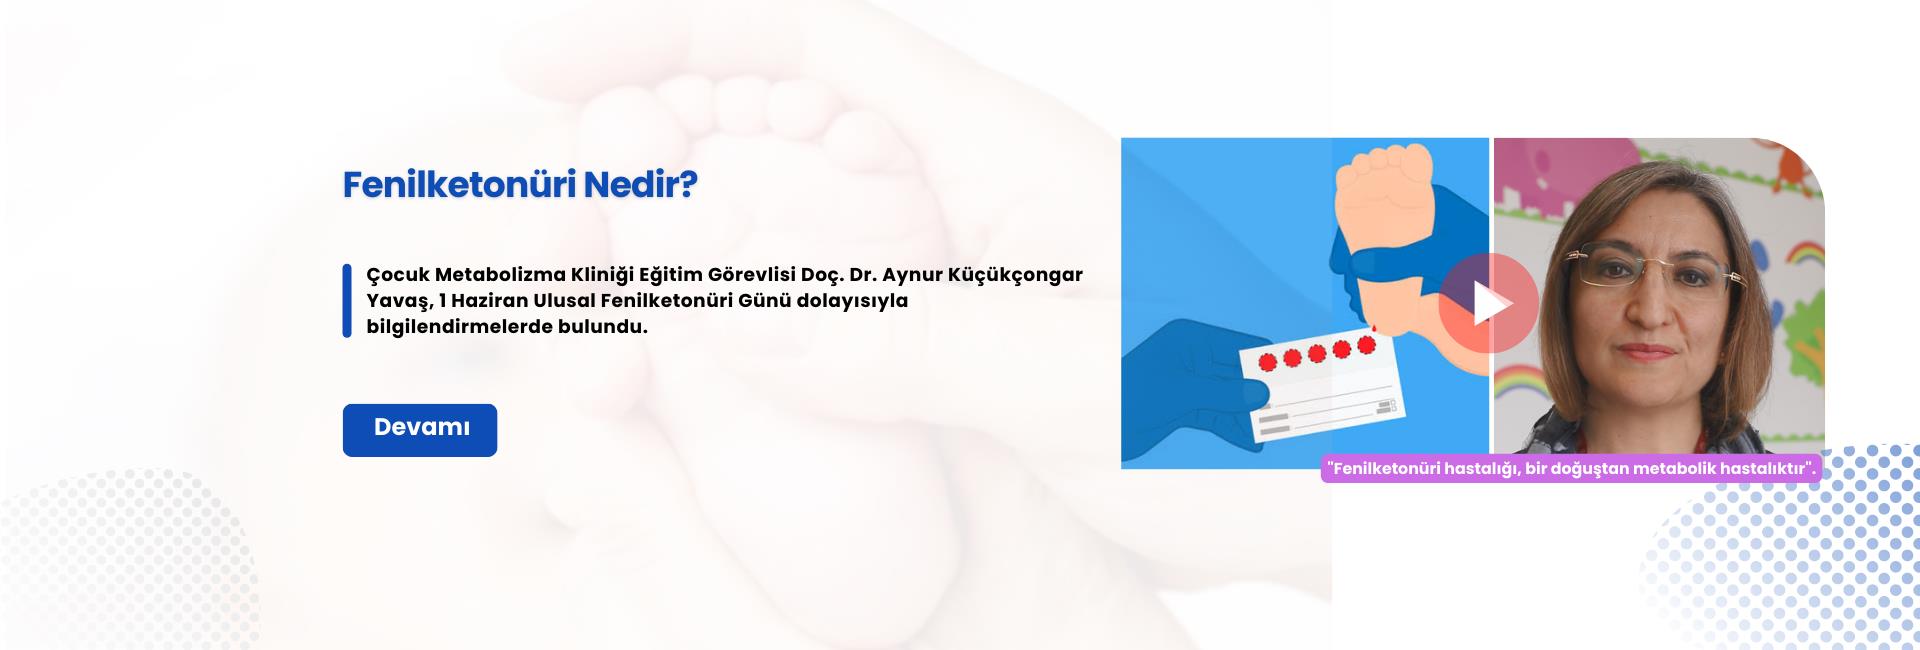 Çocuk Metabolizma Kliniği doktorlarımızdan Doç. Dr. Aynur Küçükçongar Yavaş, Ulusal Fenilketonüri Günü dolayısıyla bilgilendirmelerde bulundu.